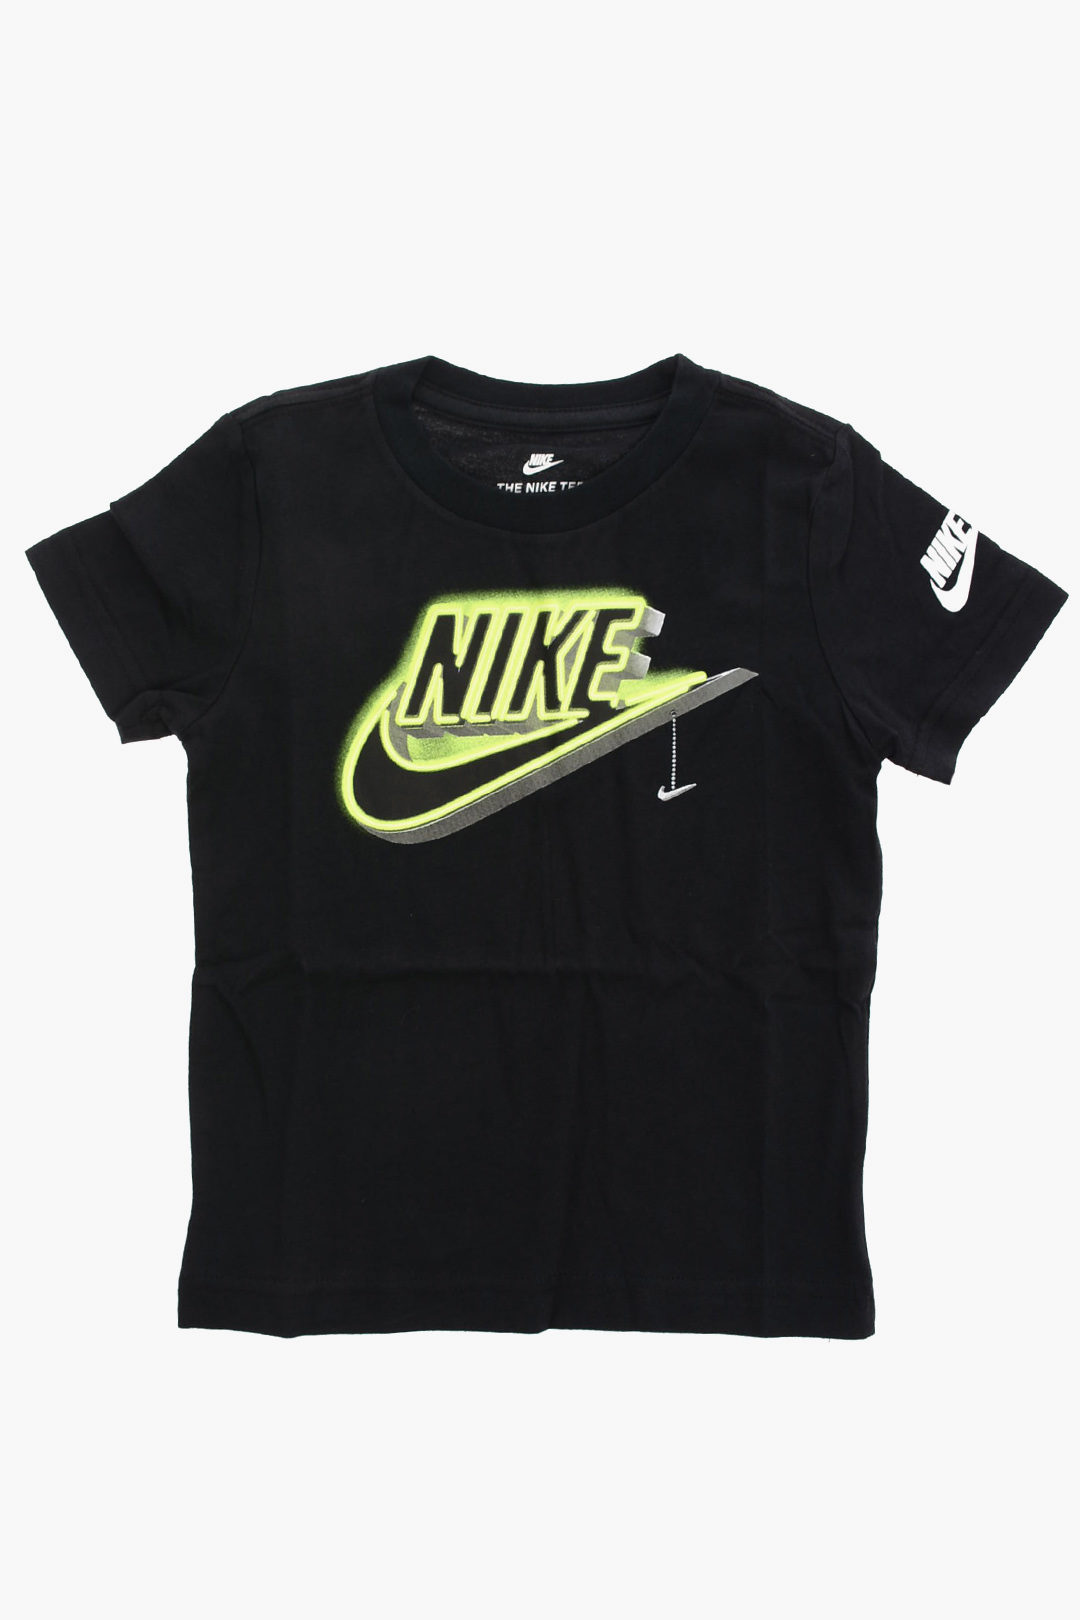 Nike KIDS Jersey t-shirt THE DARK boys - Glamood